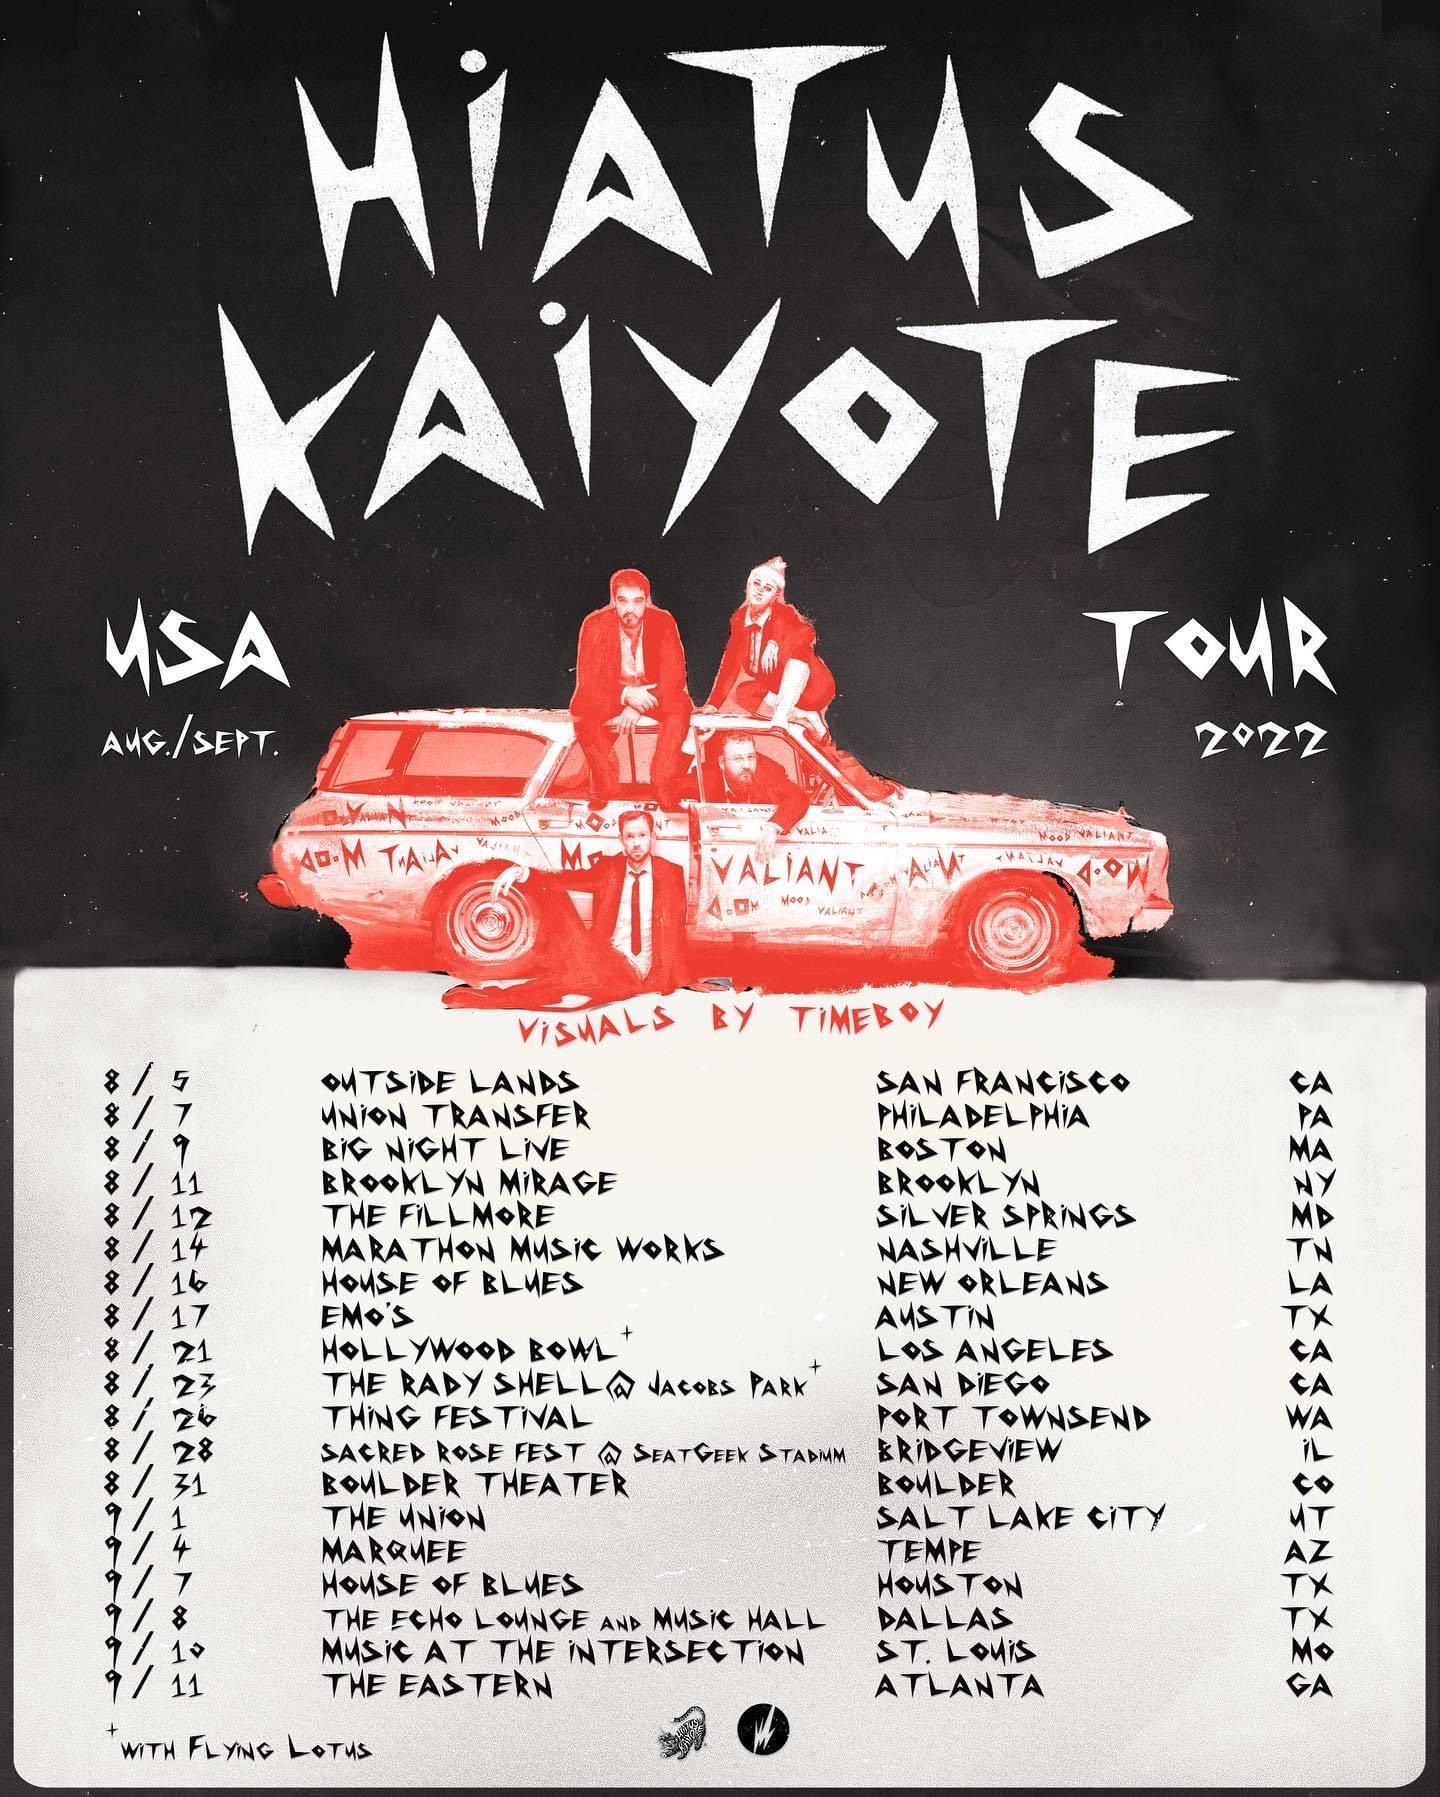 hiatus kaiyote tour opener